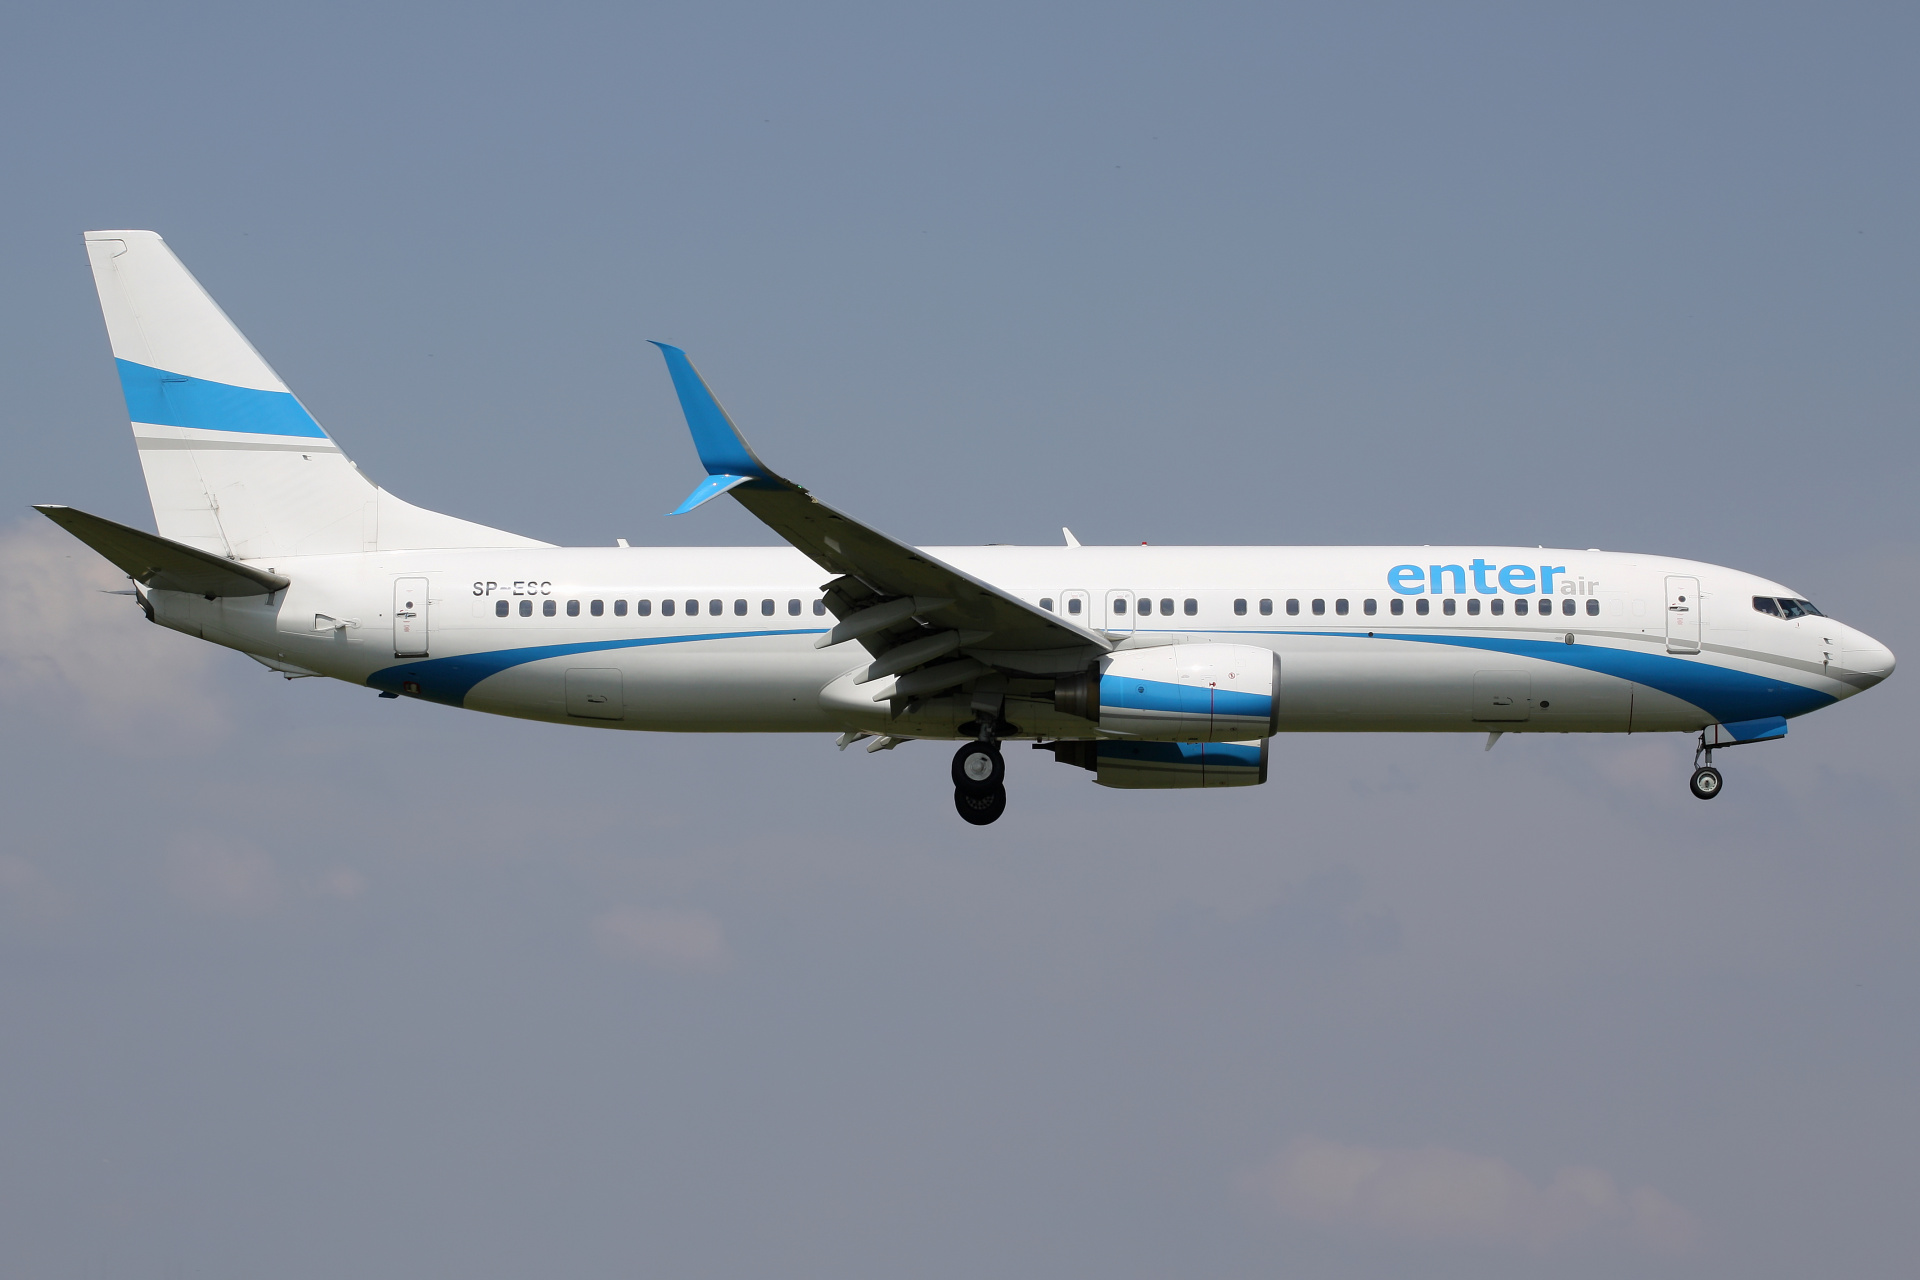 SP-ESC (Aircraft » EPWA Spotting » Boeing 737-800 » Enter Air)